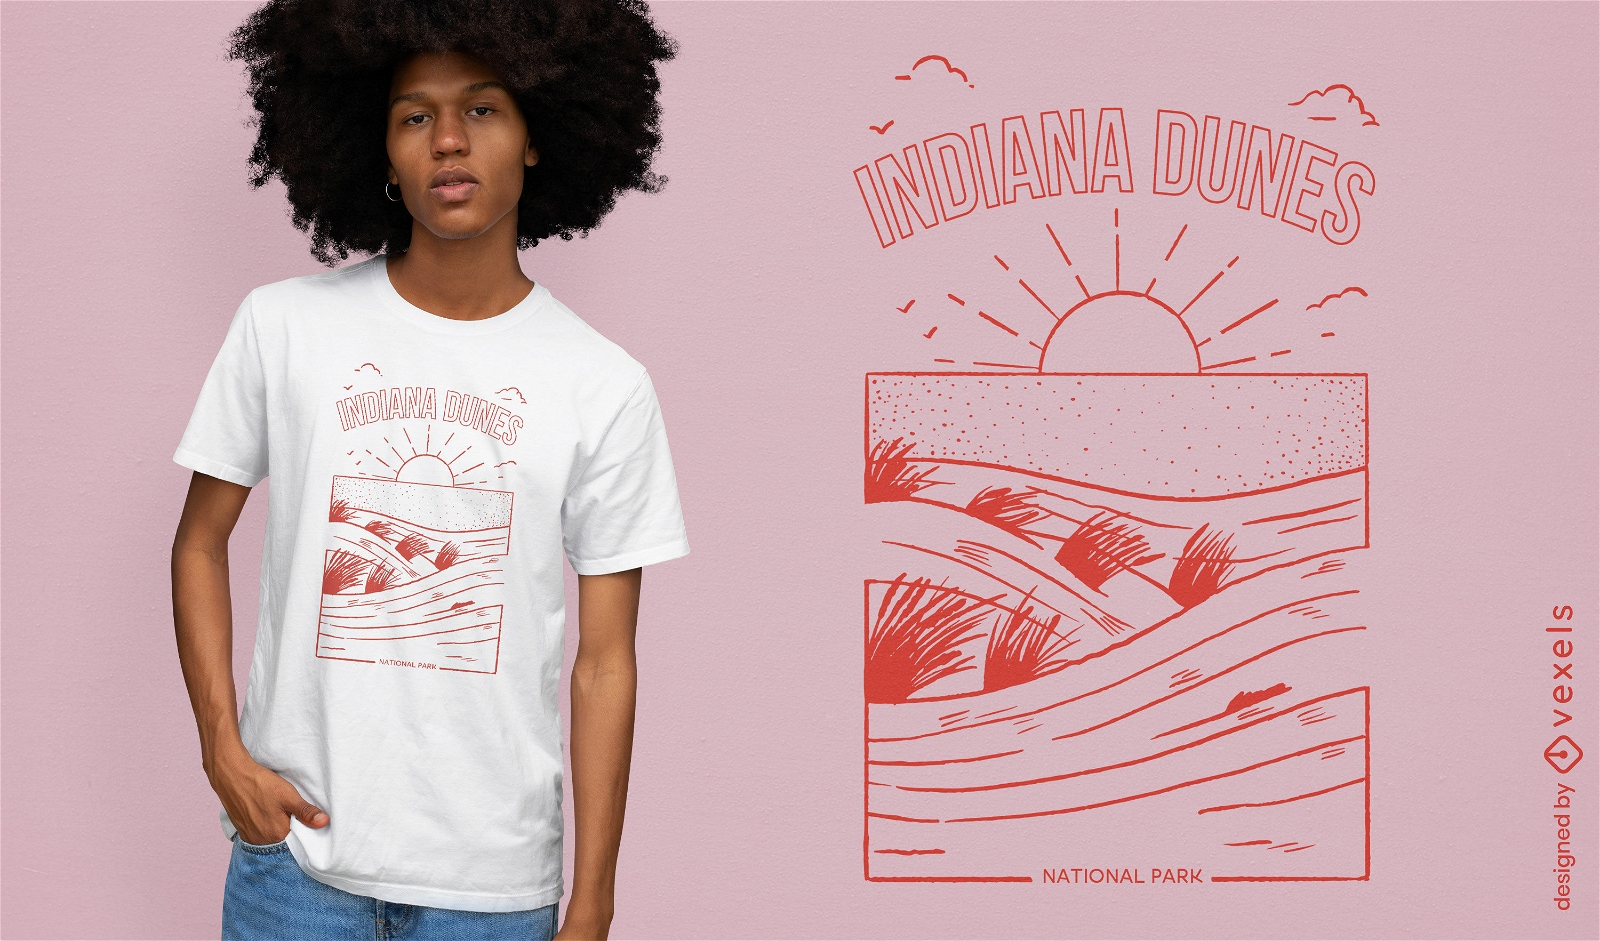 Indiana dunes national park t-shirt design